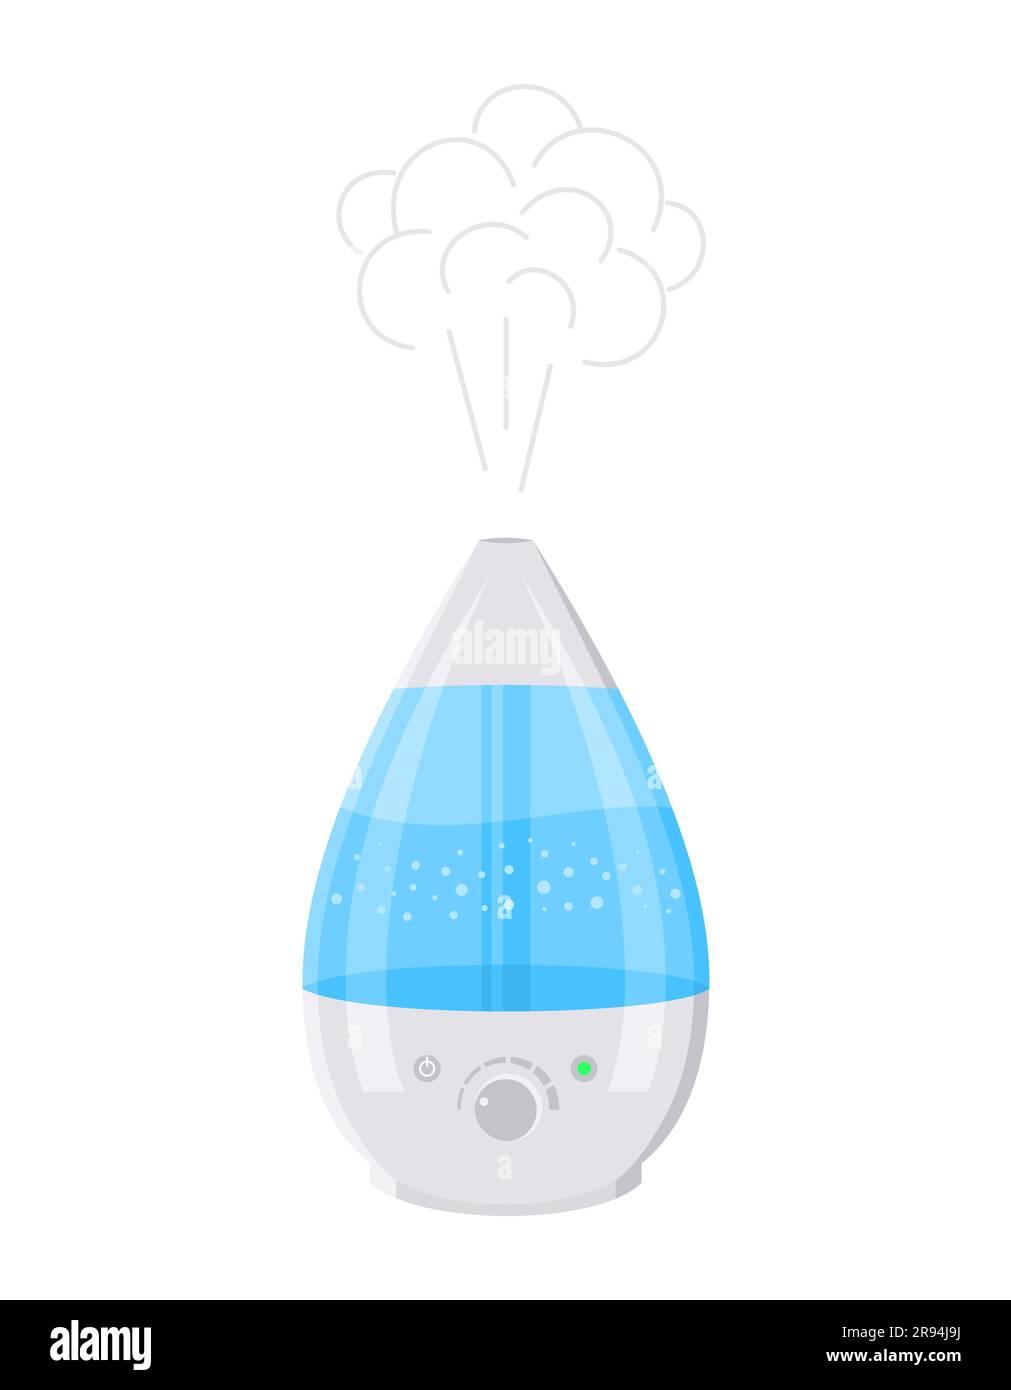 Ein funktionierender weiß-blauer Luftbefeuchter mit isoliertem Wasserdampf auf weißem Hintergrund. Abbildung eines flachen Vektors Stock Vektor